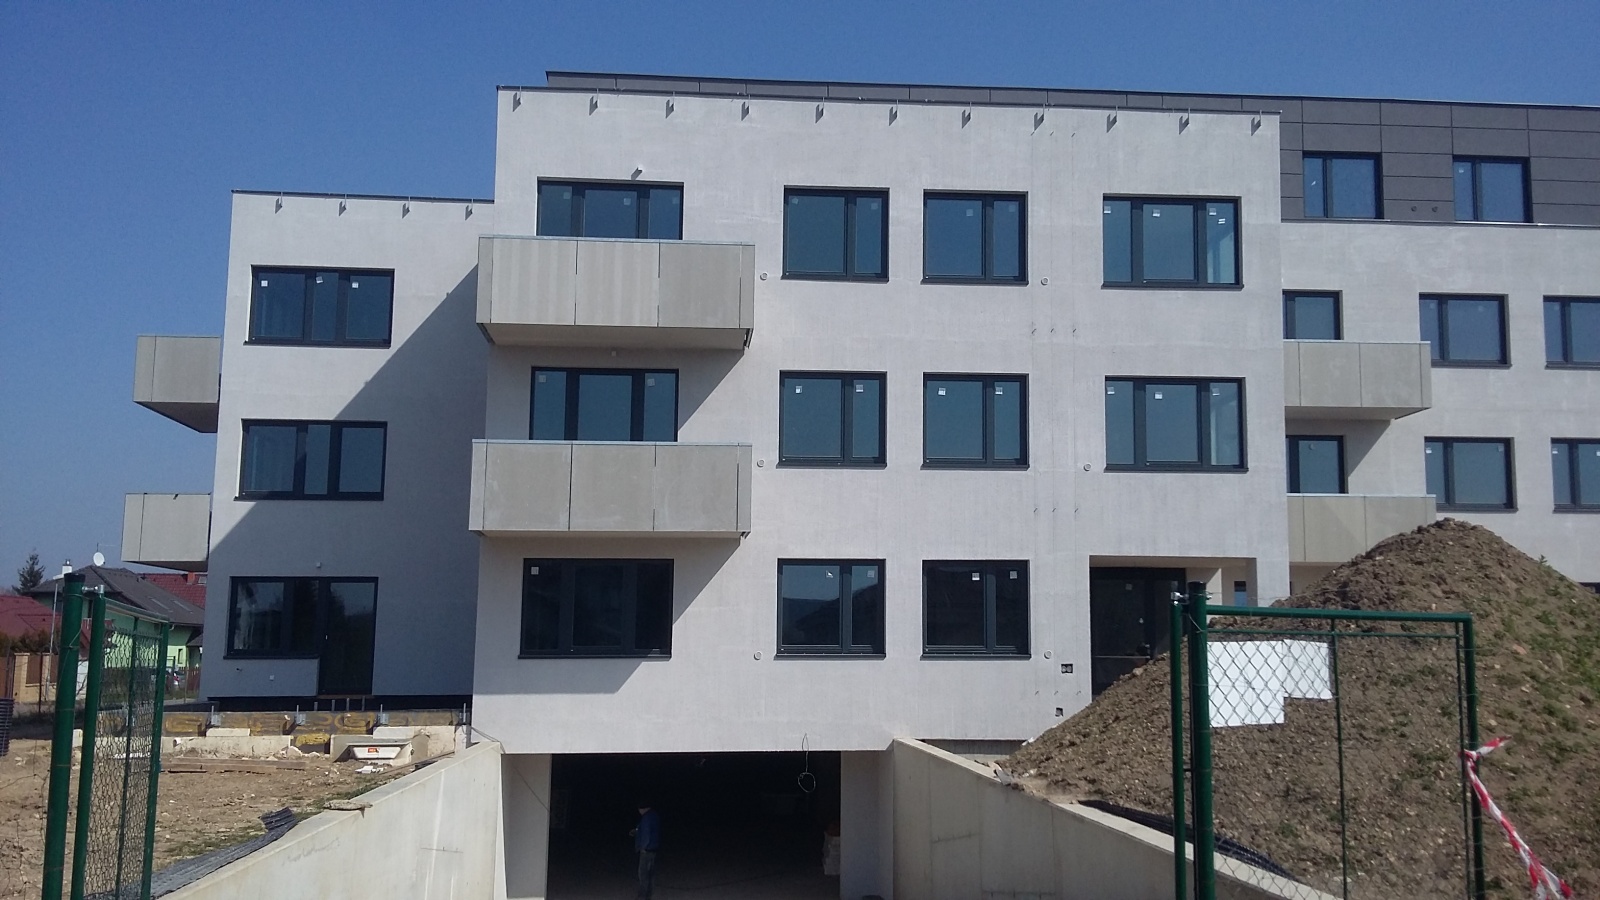 Byt 4+kk, 107.20 m2, Horoměřice, Projekt Višnovka - bytové domy